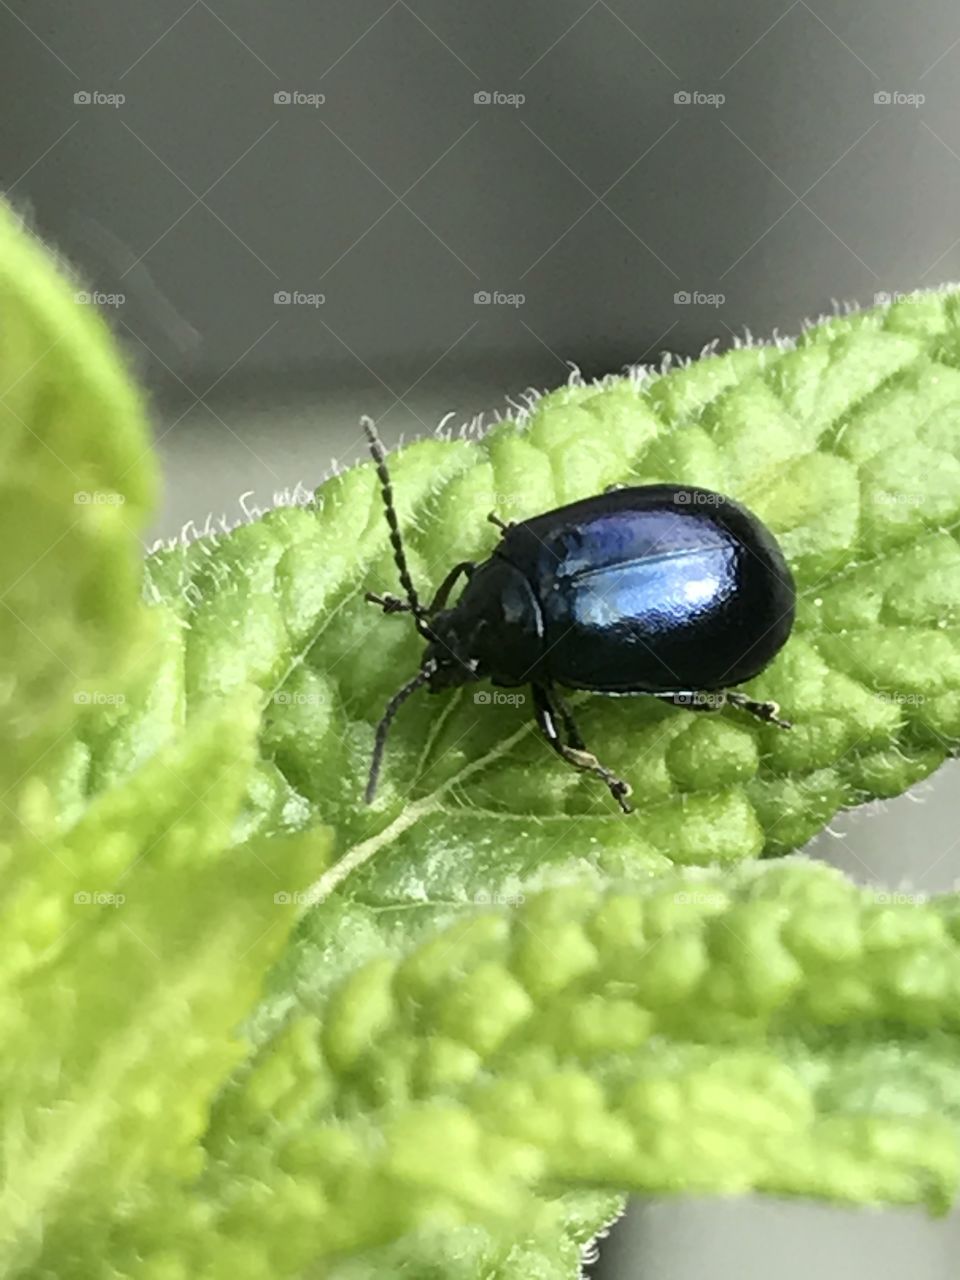 Beetle on mint leaf 